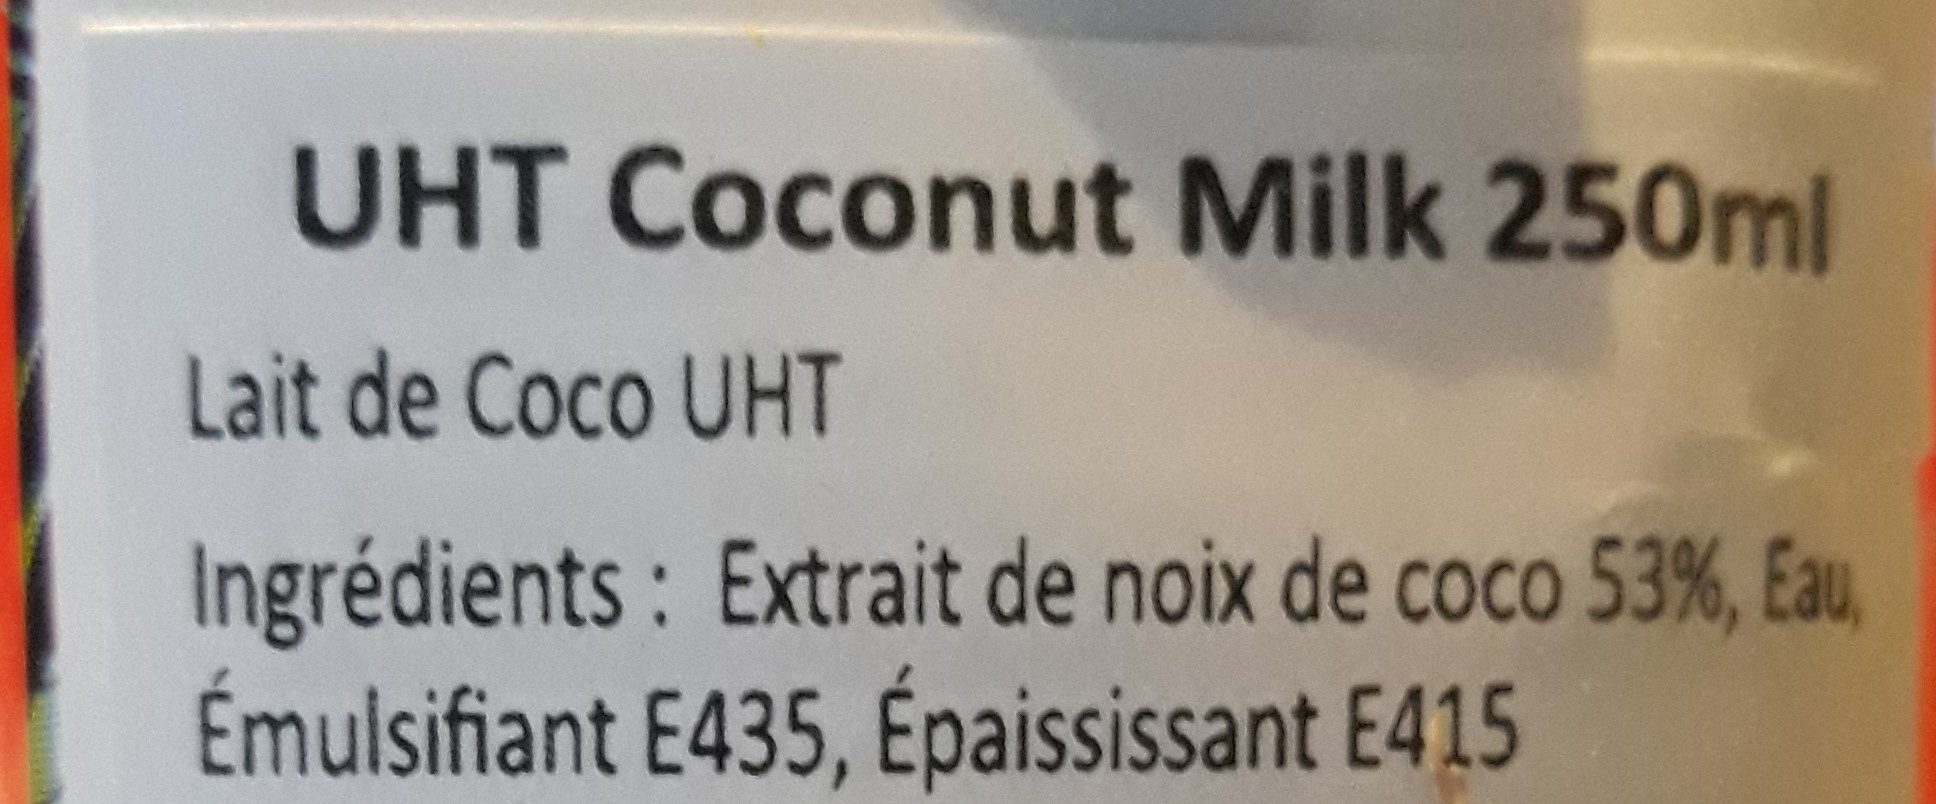 Lait de coco ttc - Ingredients - fr